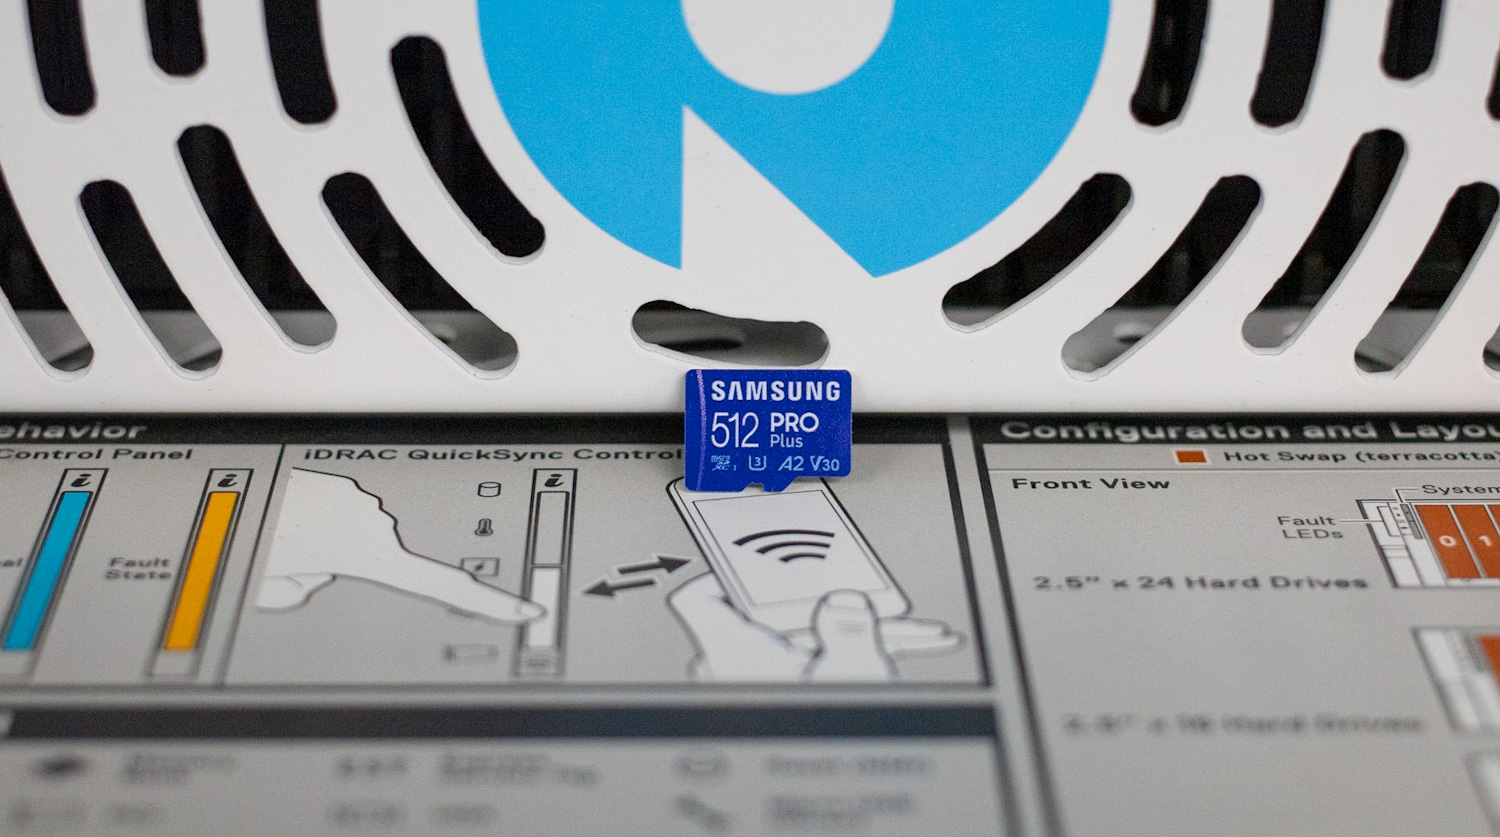 Examen de la carte microSD Samsung PRO Plus (512 Go